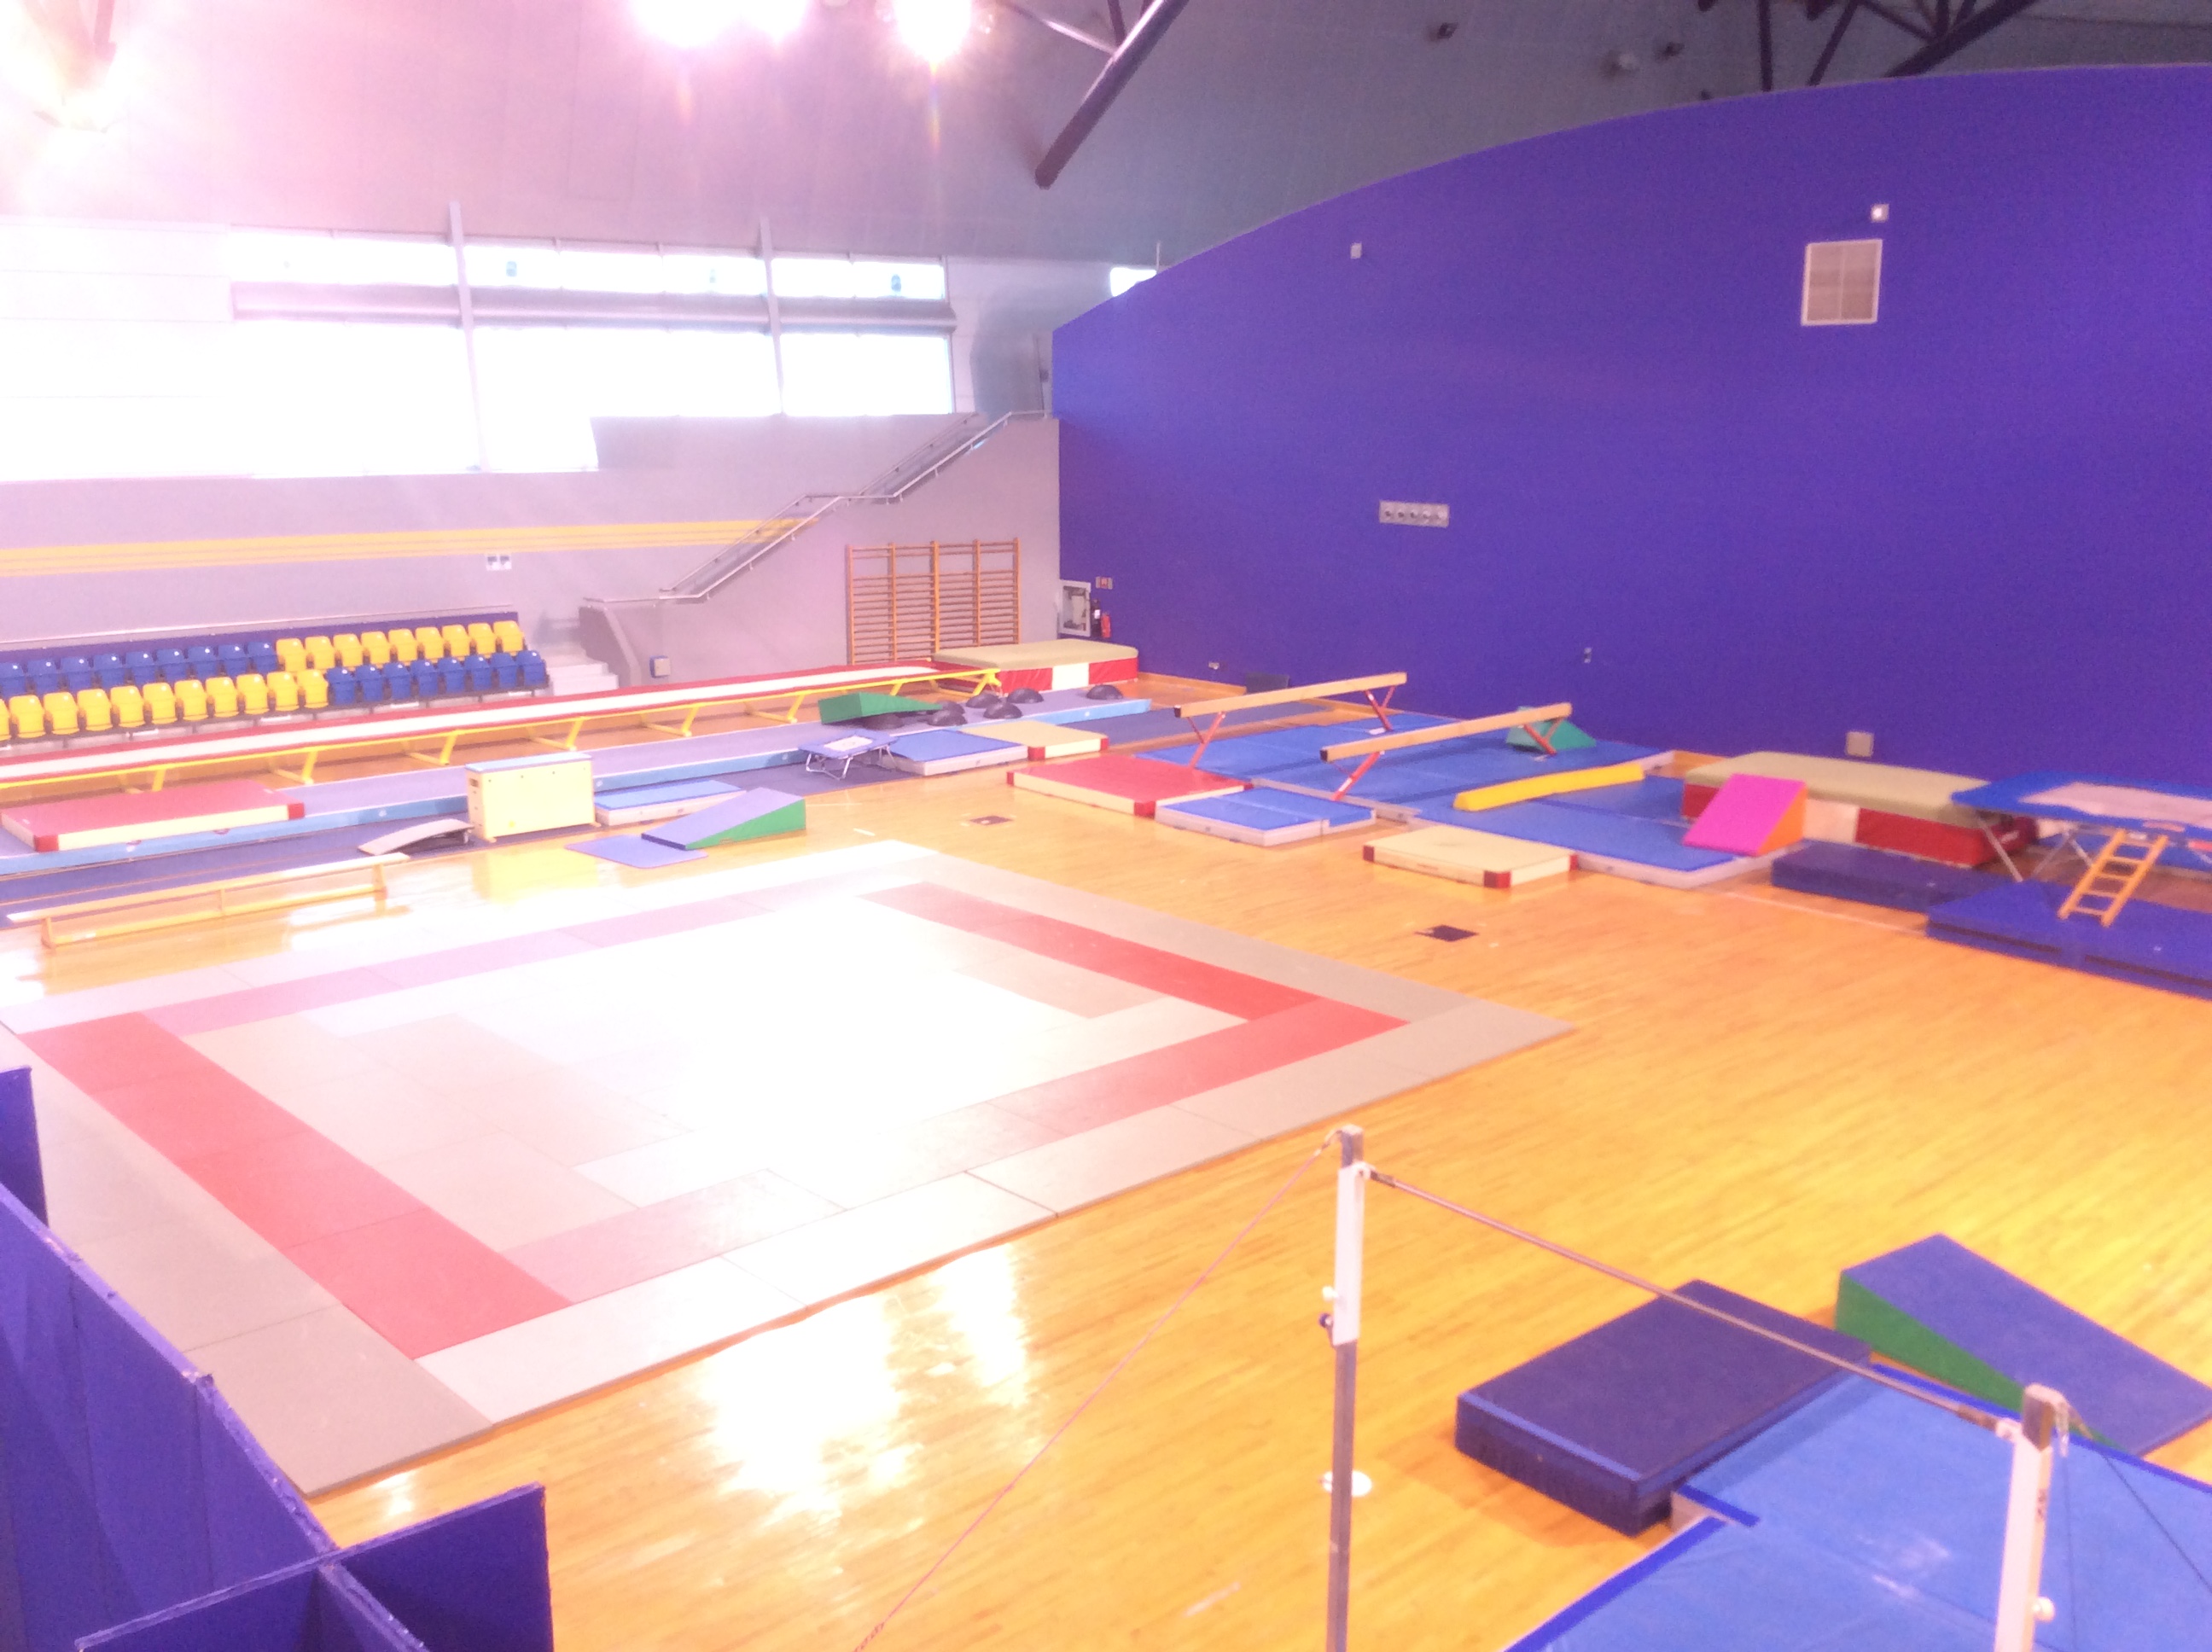 鉄棒や床運動など様々な体操競技施設も併設されている